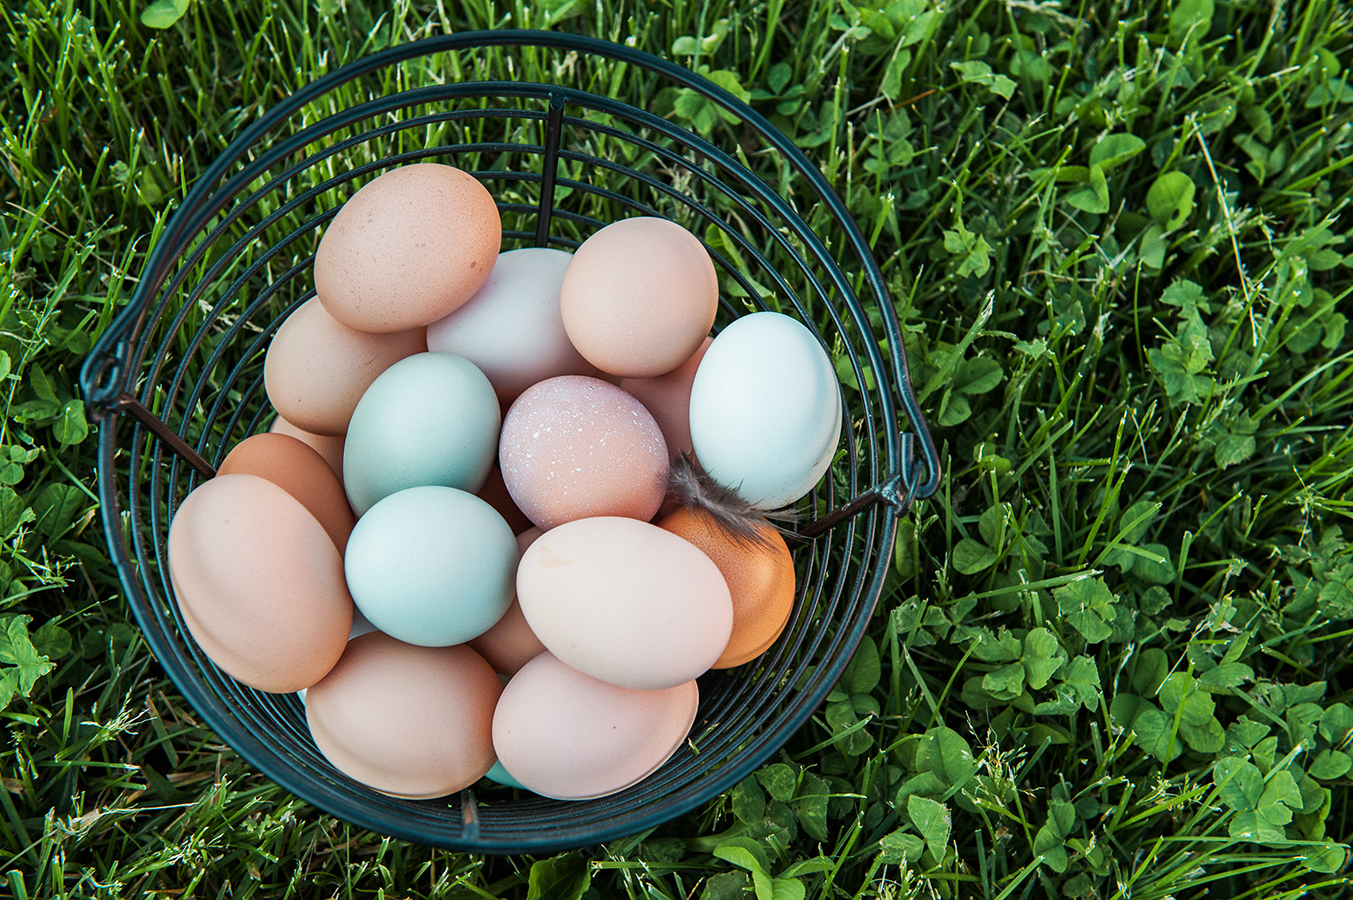 Брянская область куплю яйцо. Egg Hatch. Discus Eggs. Cryopreservation,Frozen Eggs or Fresh Eggs.